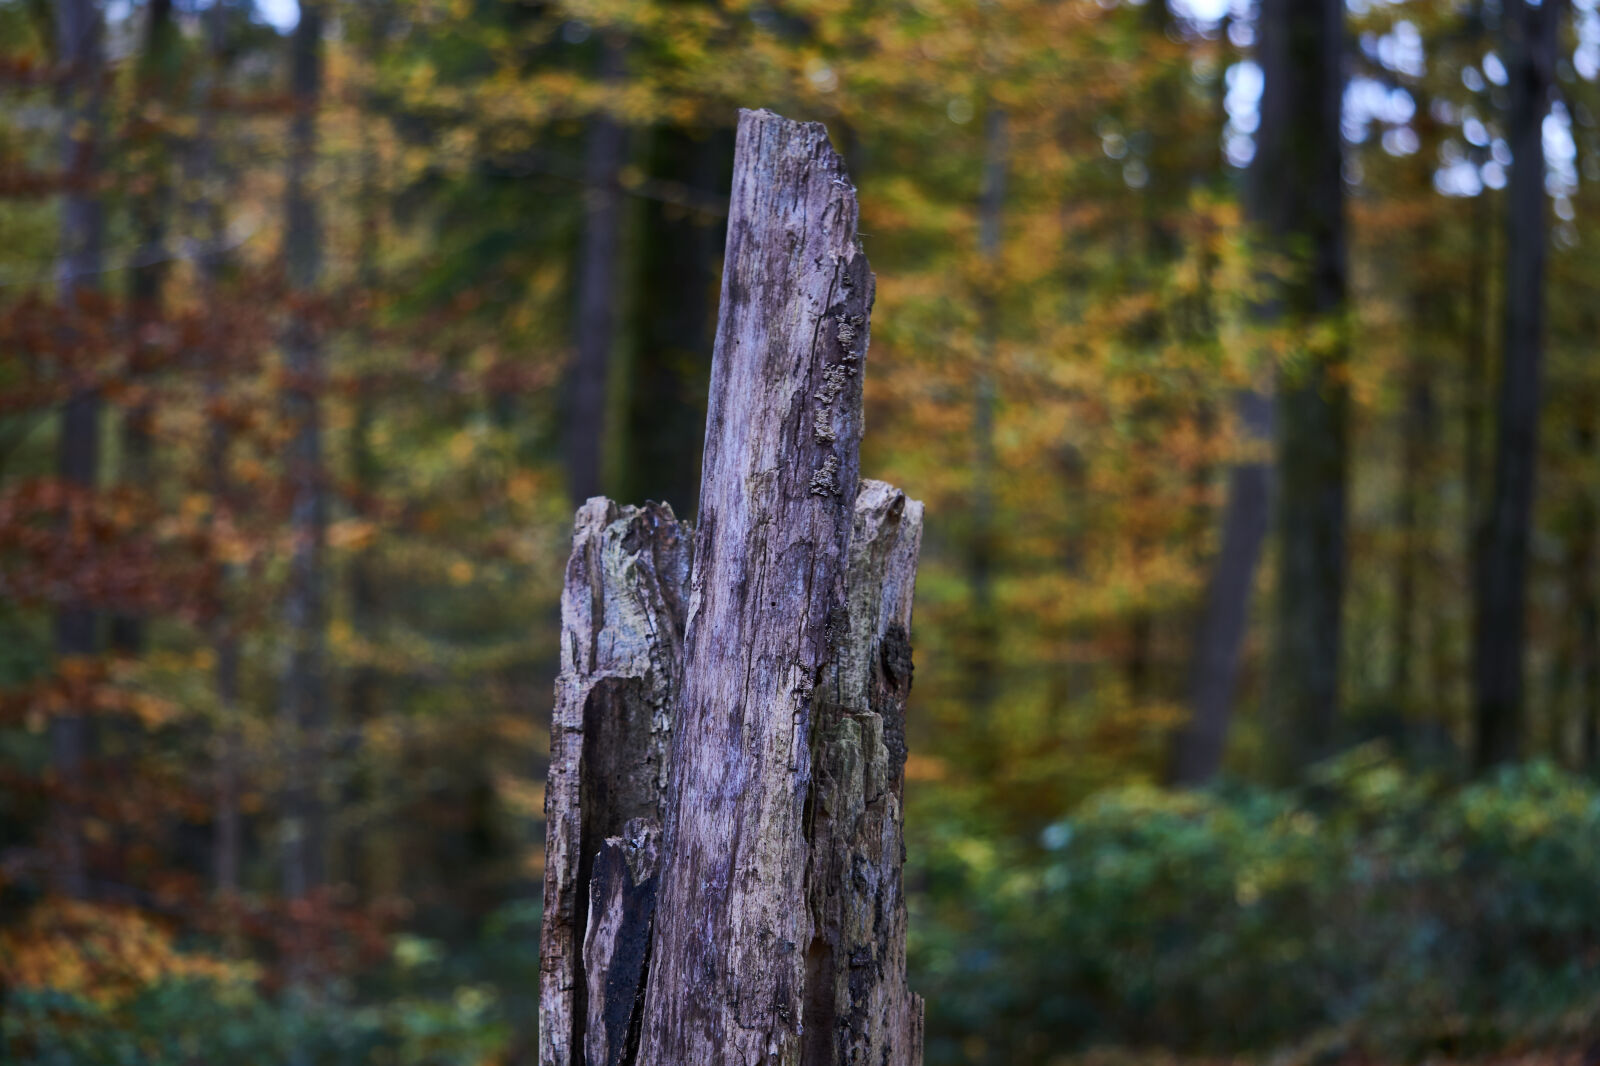 Sony E 55-210mm F4.5-6.3 OSS sample photo. Autumn, leaves, tree, tree photography